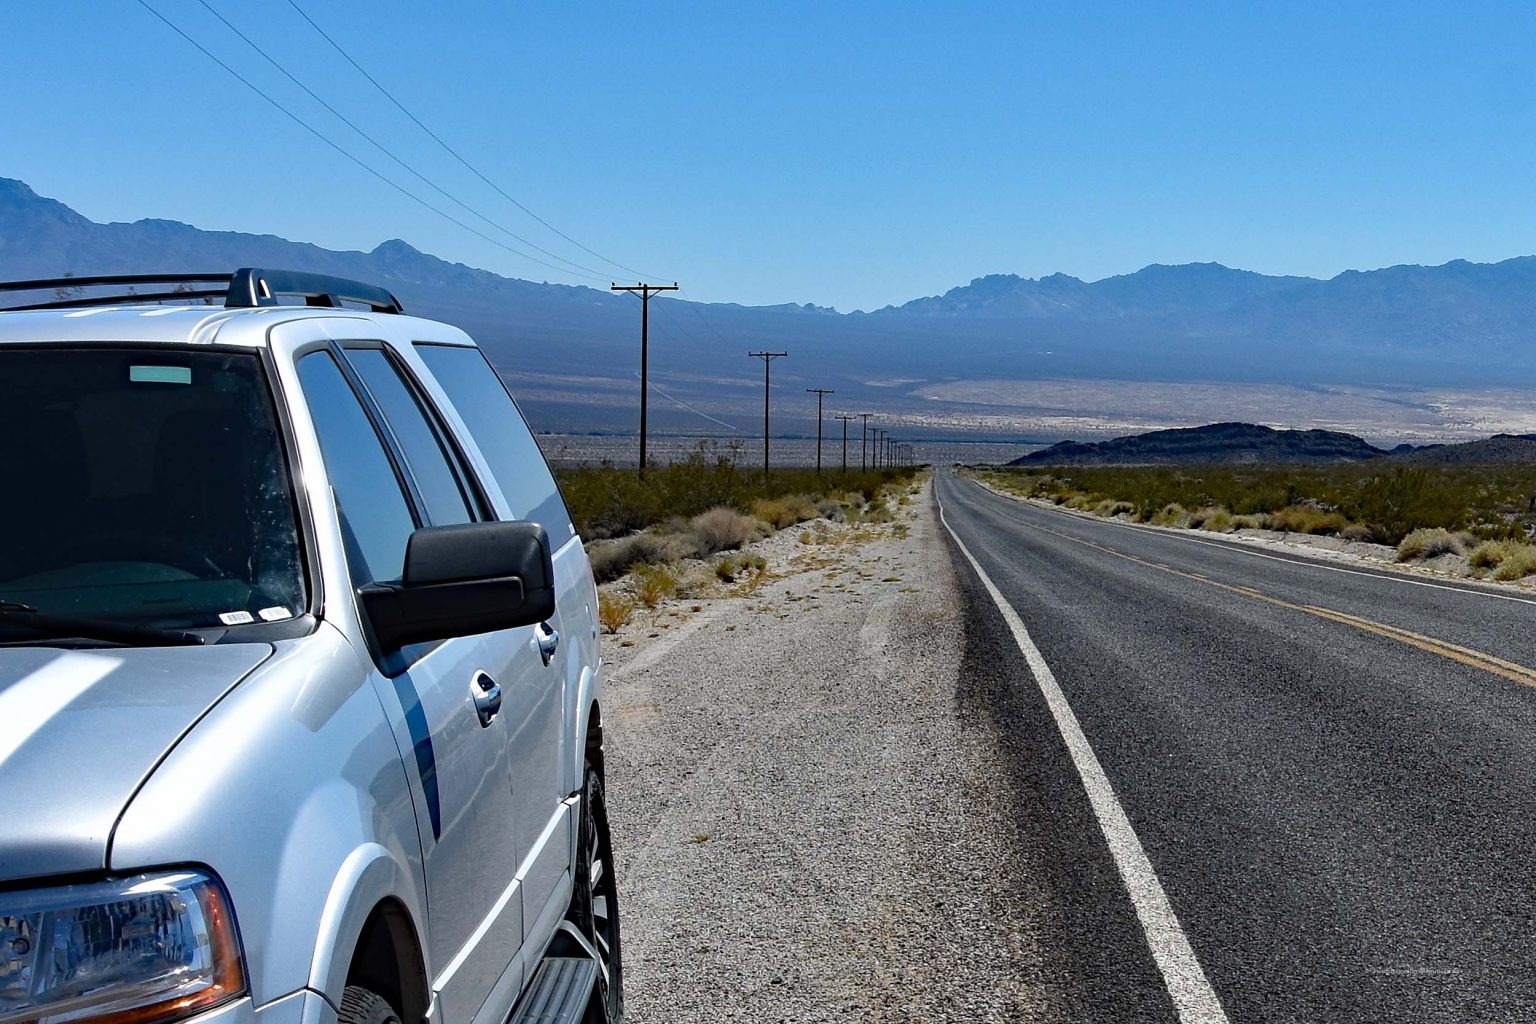 SUV in der Mojave-Wüste